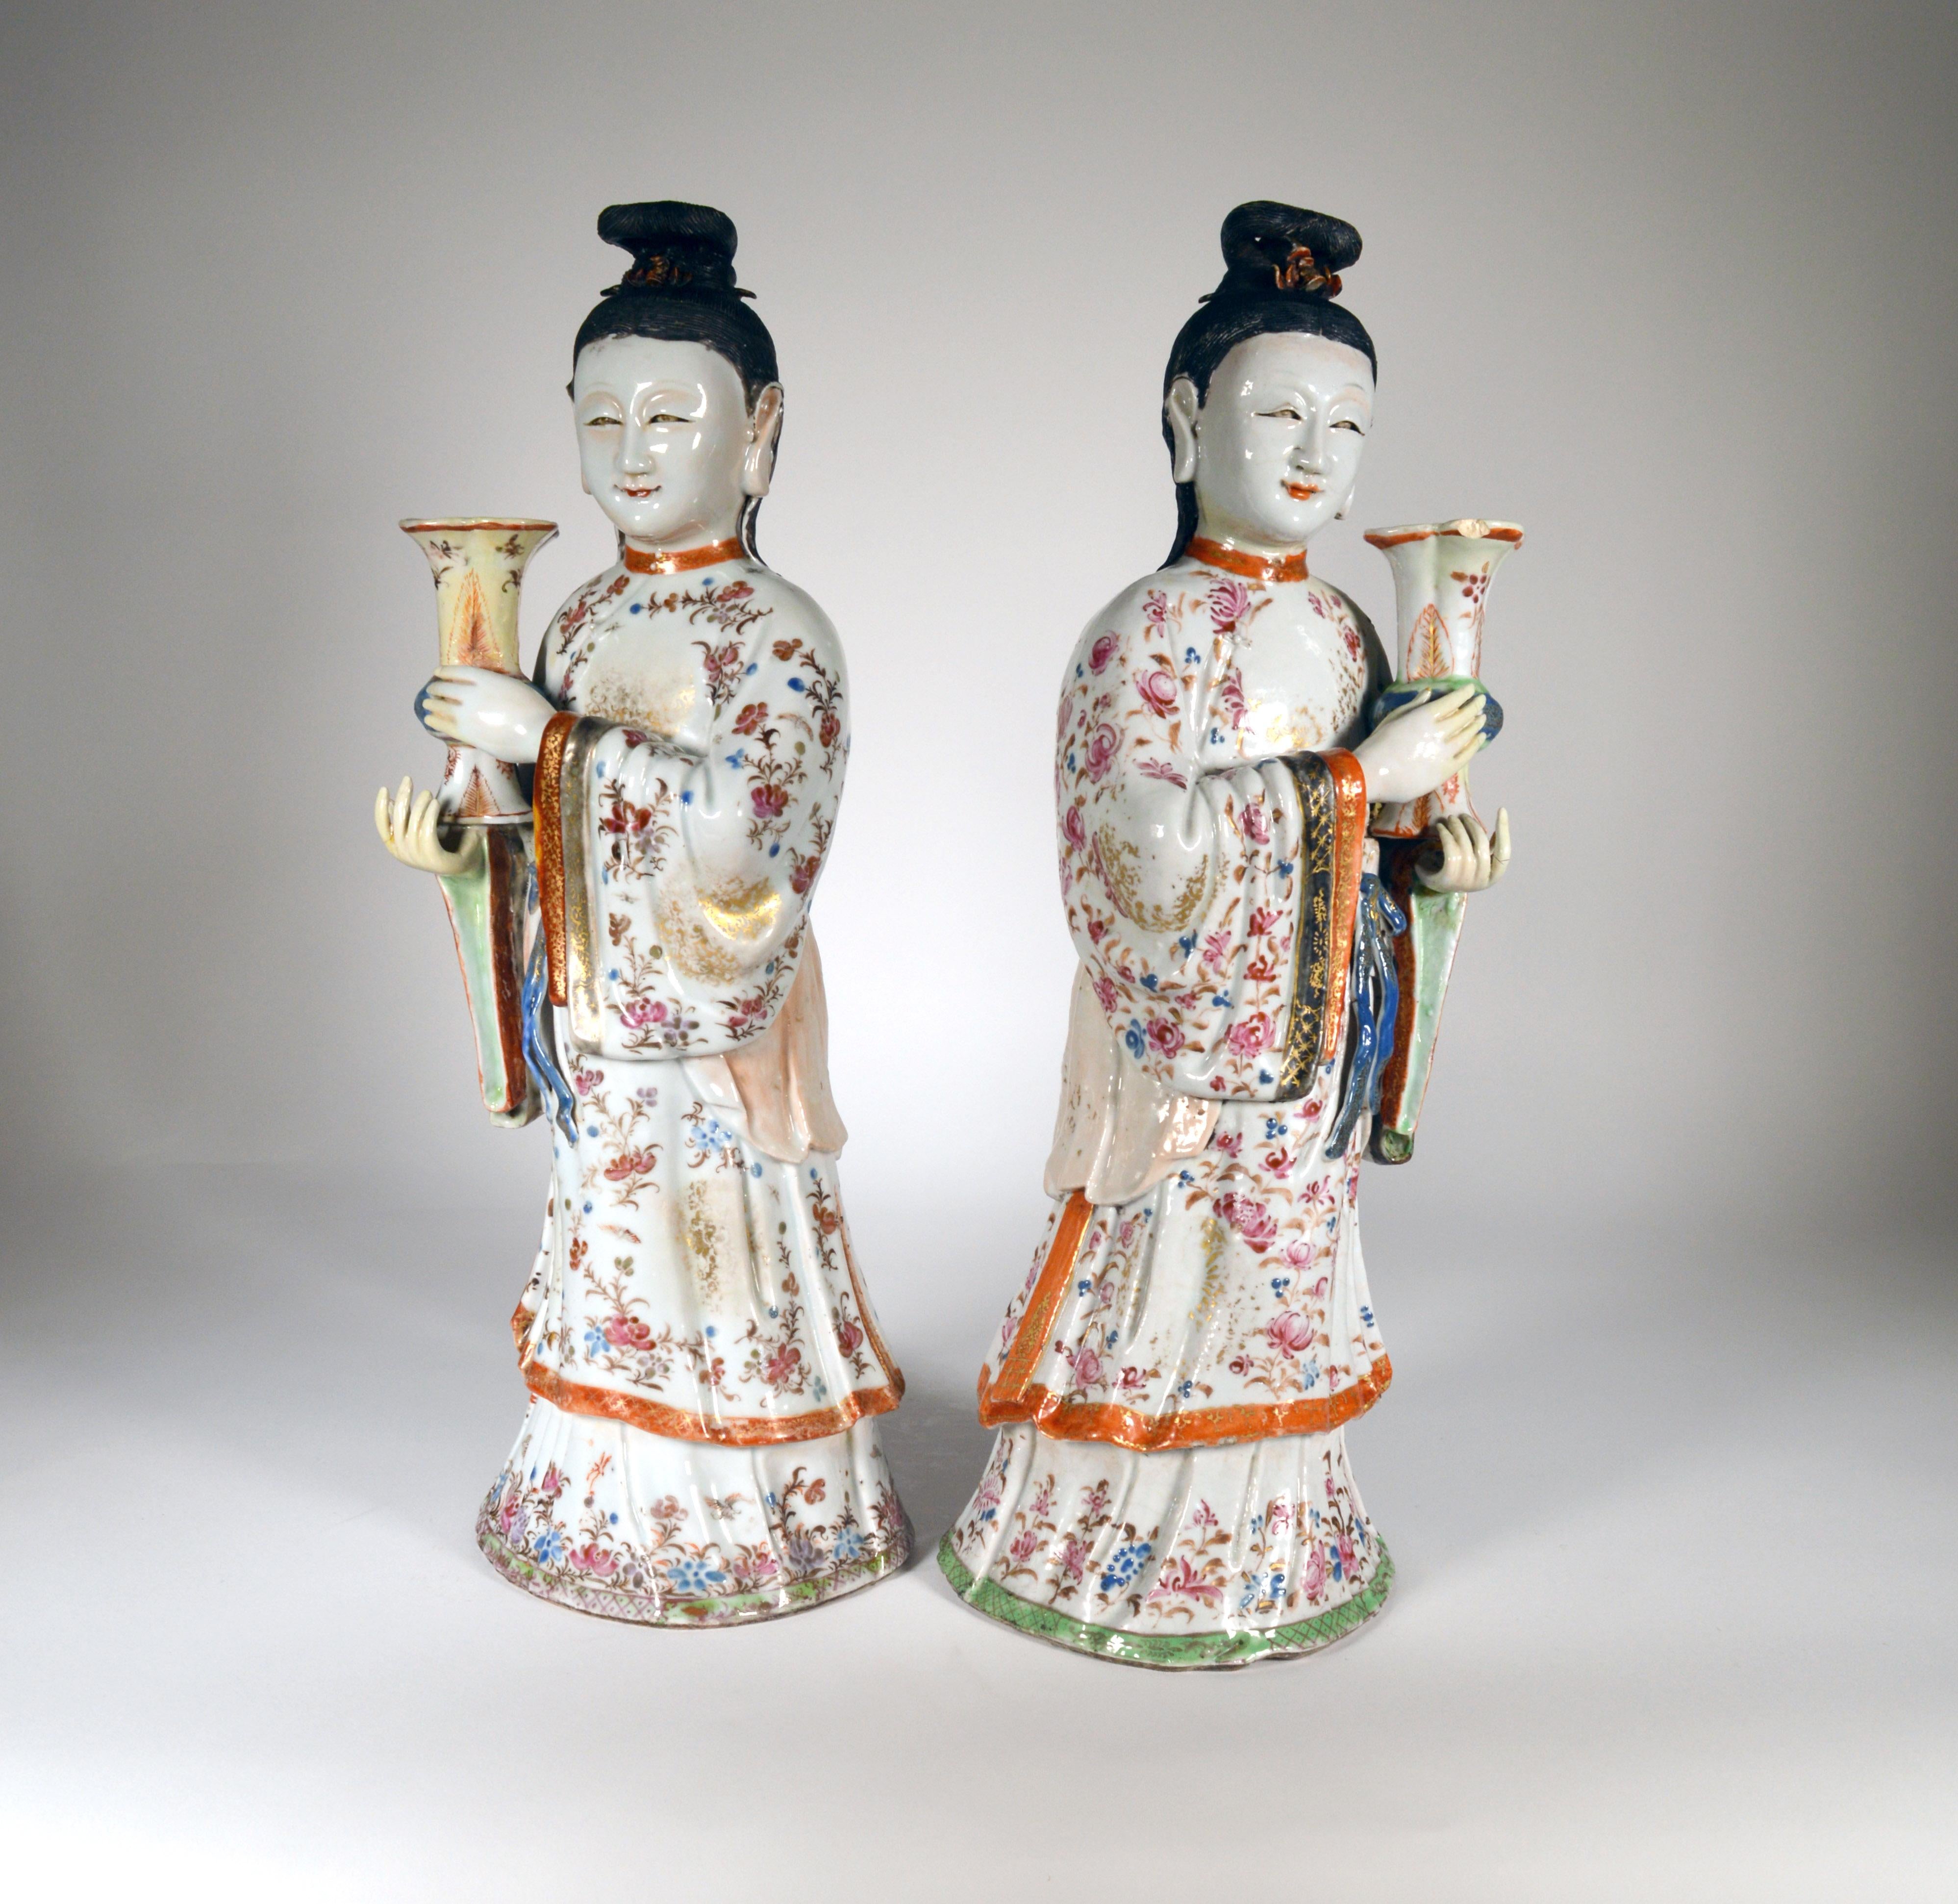 Chinesisches Export-Porzellan Paar Jungfrauen-Kerzenleuchter, 
ca. 1760-1775 
   

Ein Paar großer chinesischer Export-Figuren stehender Mädchen, die Vasen in Gu-Form als Kerzenleuchter halten, in 